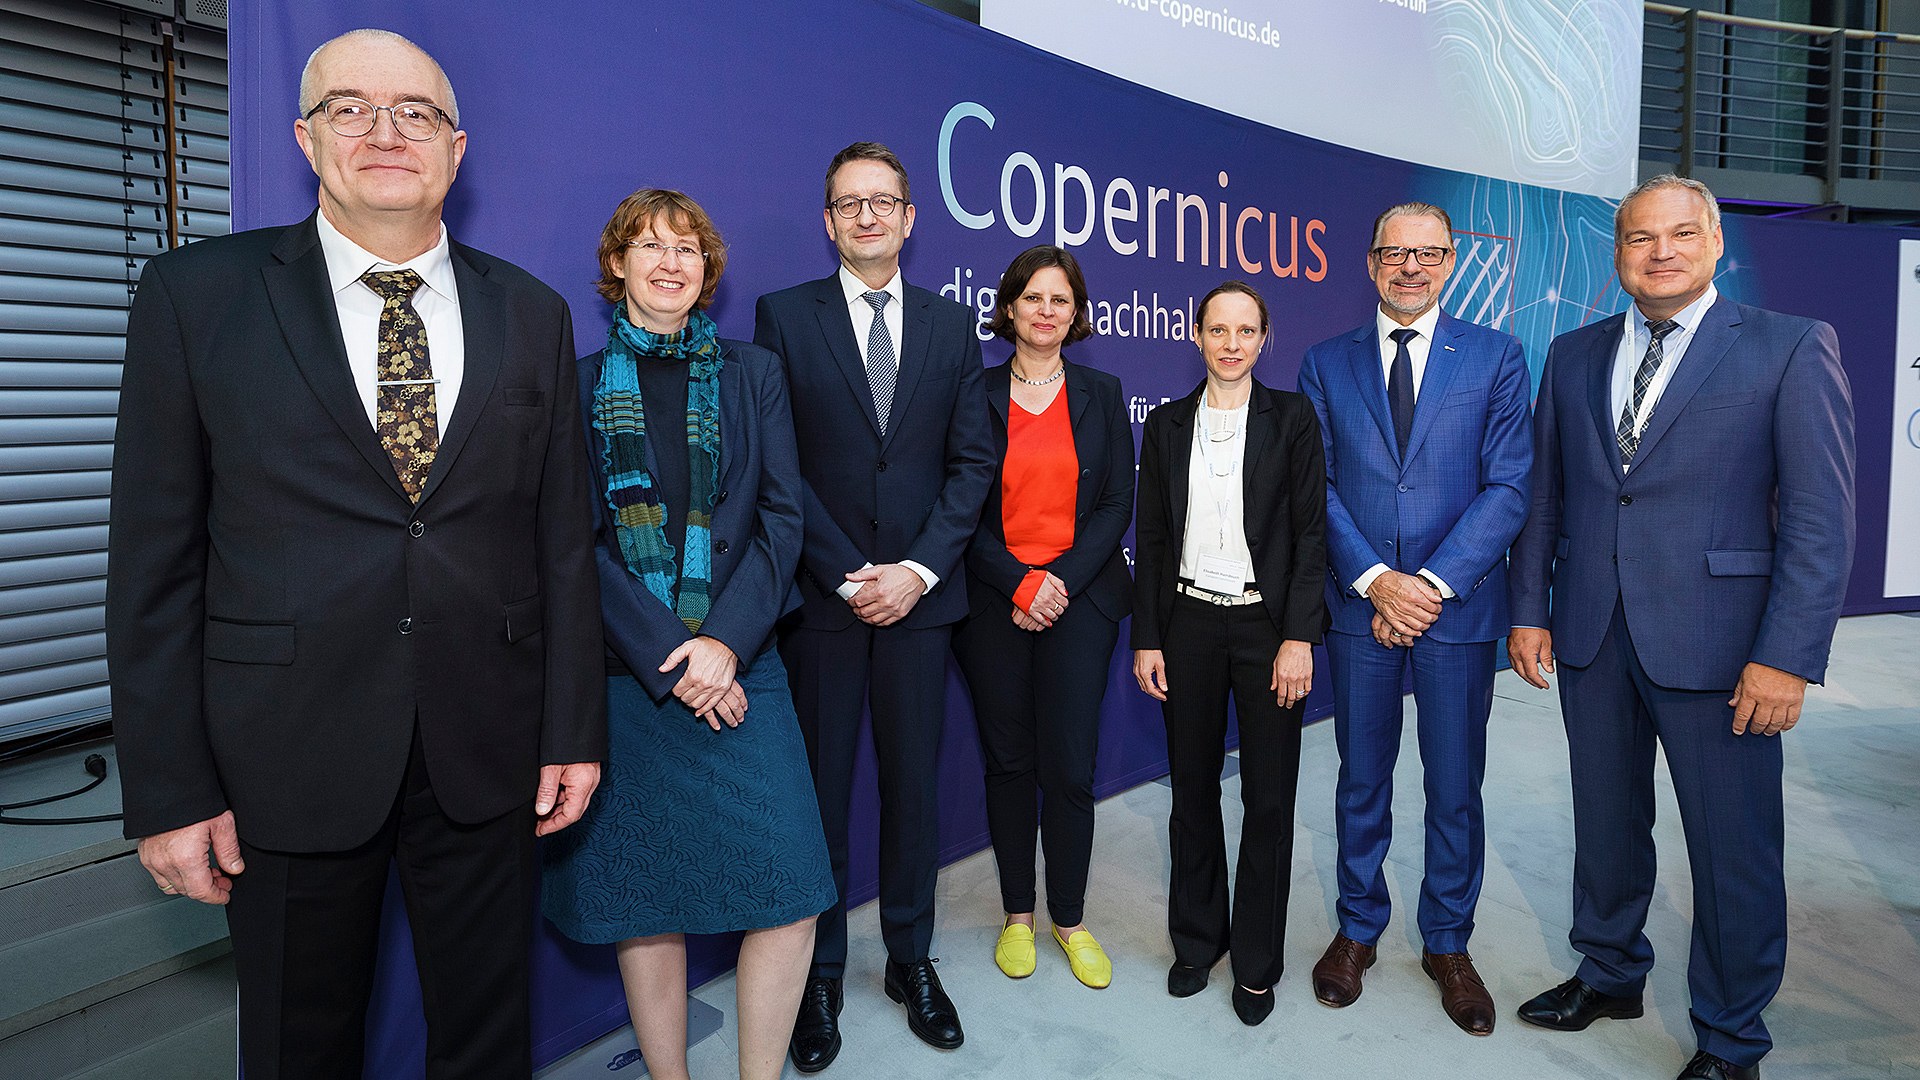 "Nationales Forum für Fernerkundung und Copernicus" 2022 in Berlin